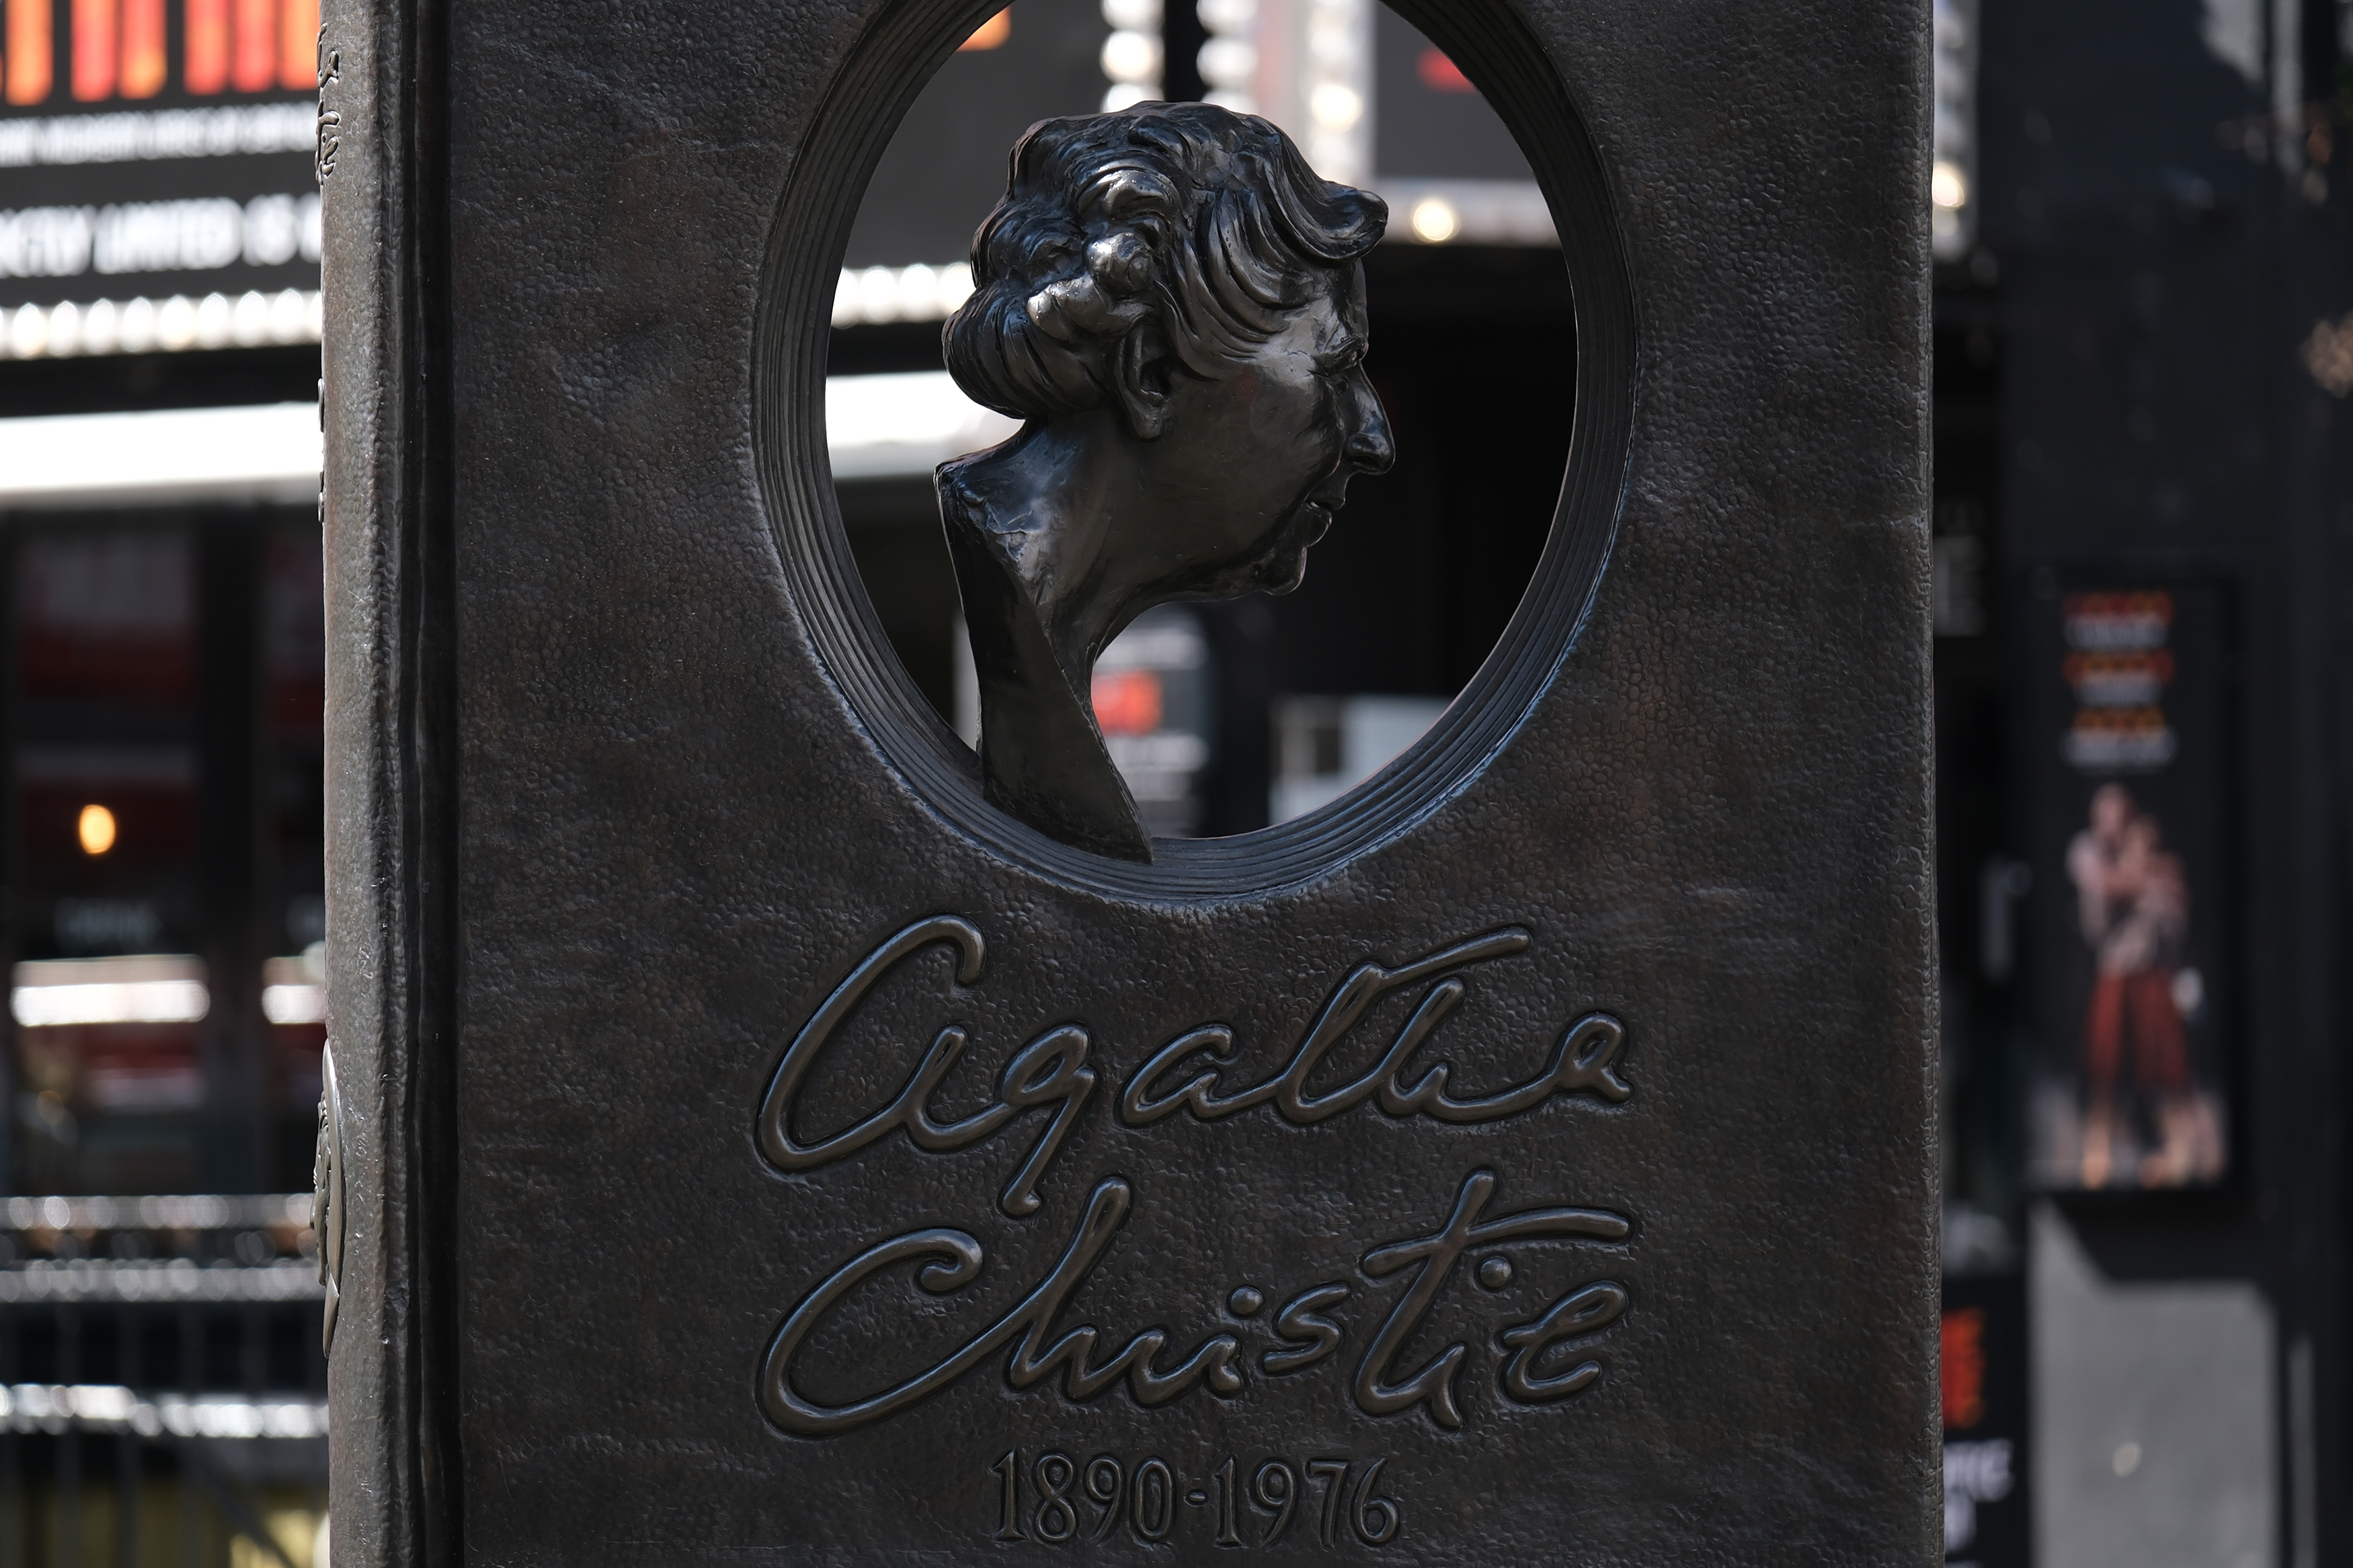 An Agatha Christie memorial in London